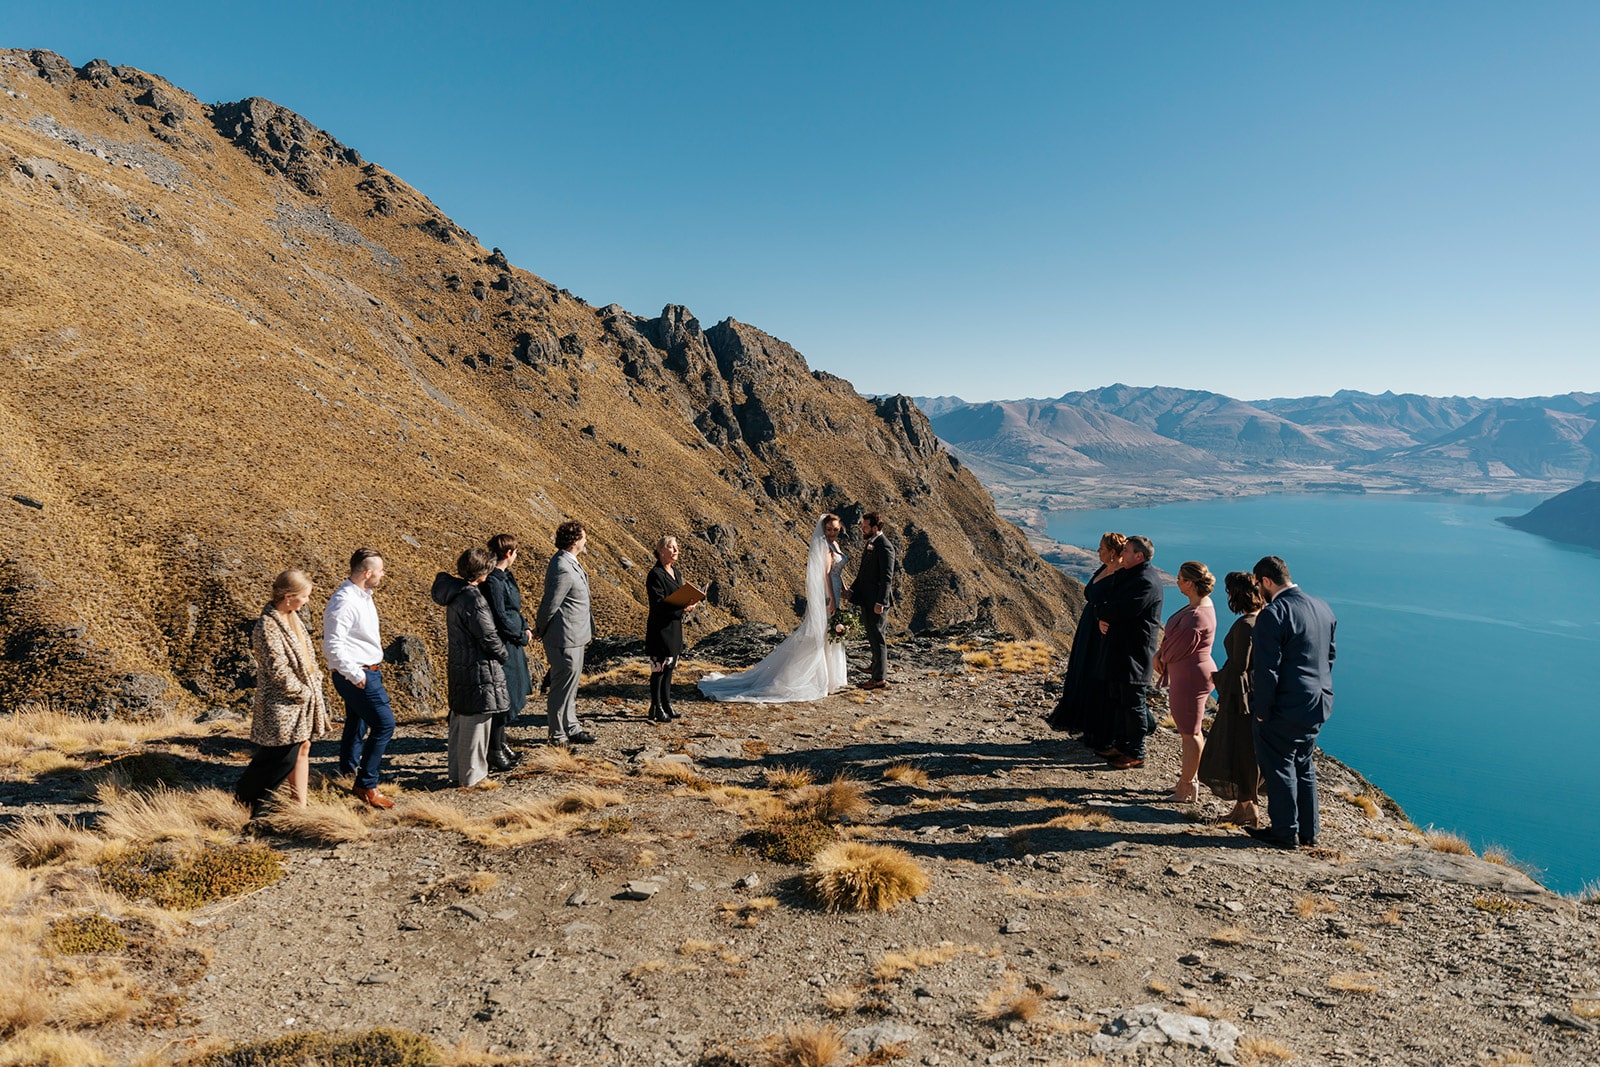 Autumn Wedding in Queenstown New Zealand